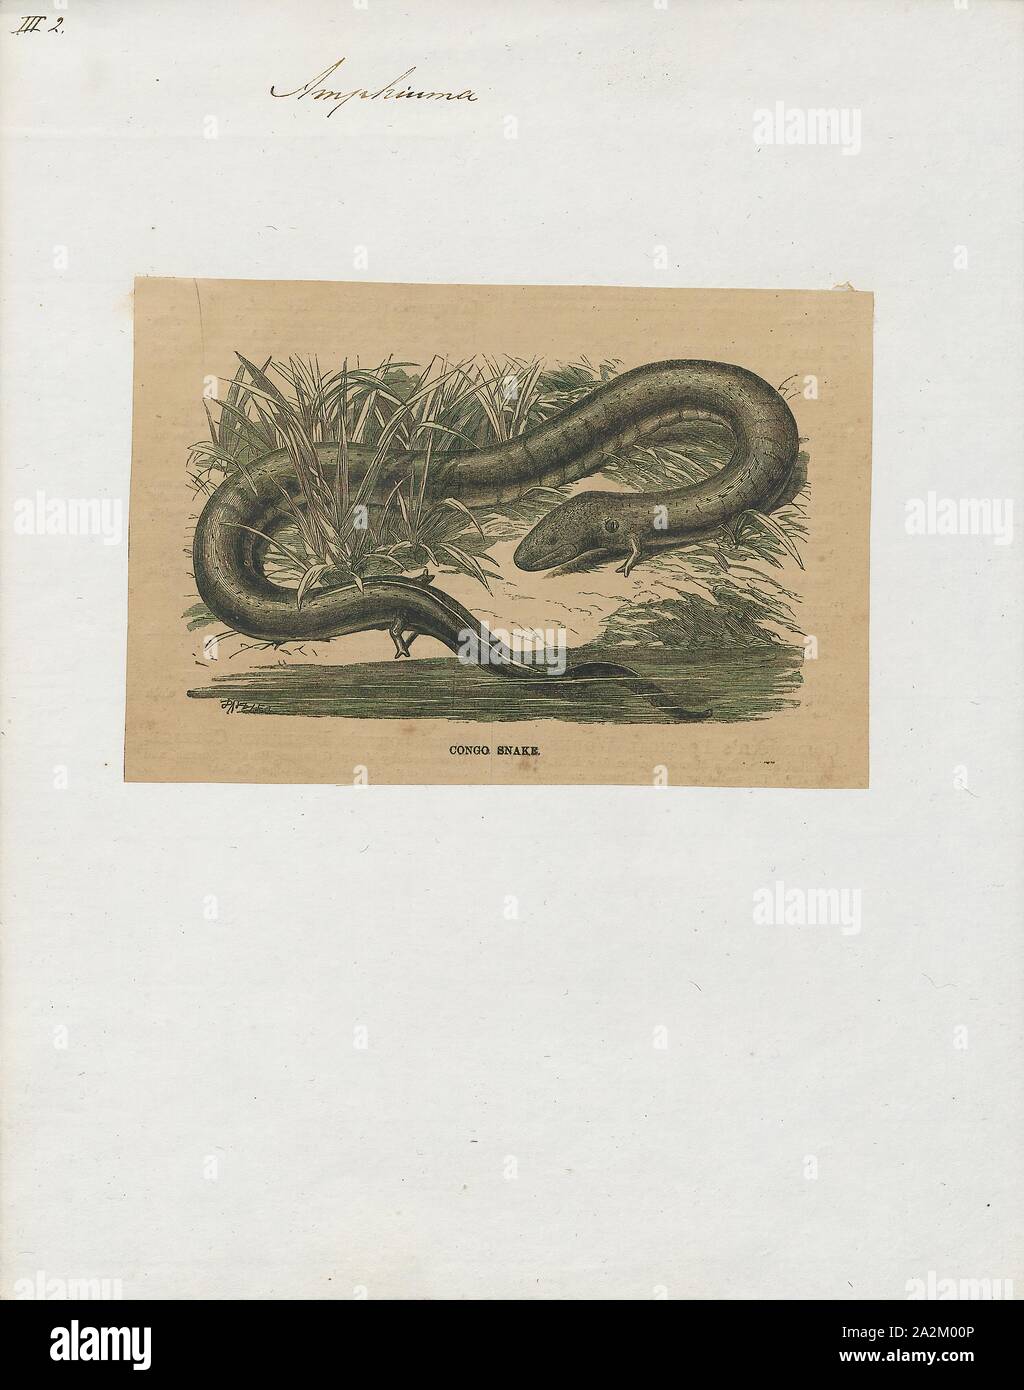 Amphiuma didactylum, Stampa, Amphiuma è un genere di acquatico salamandre dagli Stati Uniti, il solo genere pervenutici entro la famiglia Amphiumidae. Essi sono colloquialmente noto come amphiumas.Essi sono anche noti ai pescatori come 'gronghi' o 'Congo serpenti Foto Stock